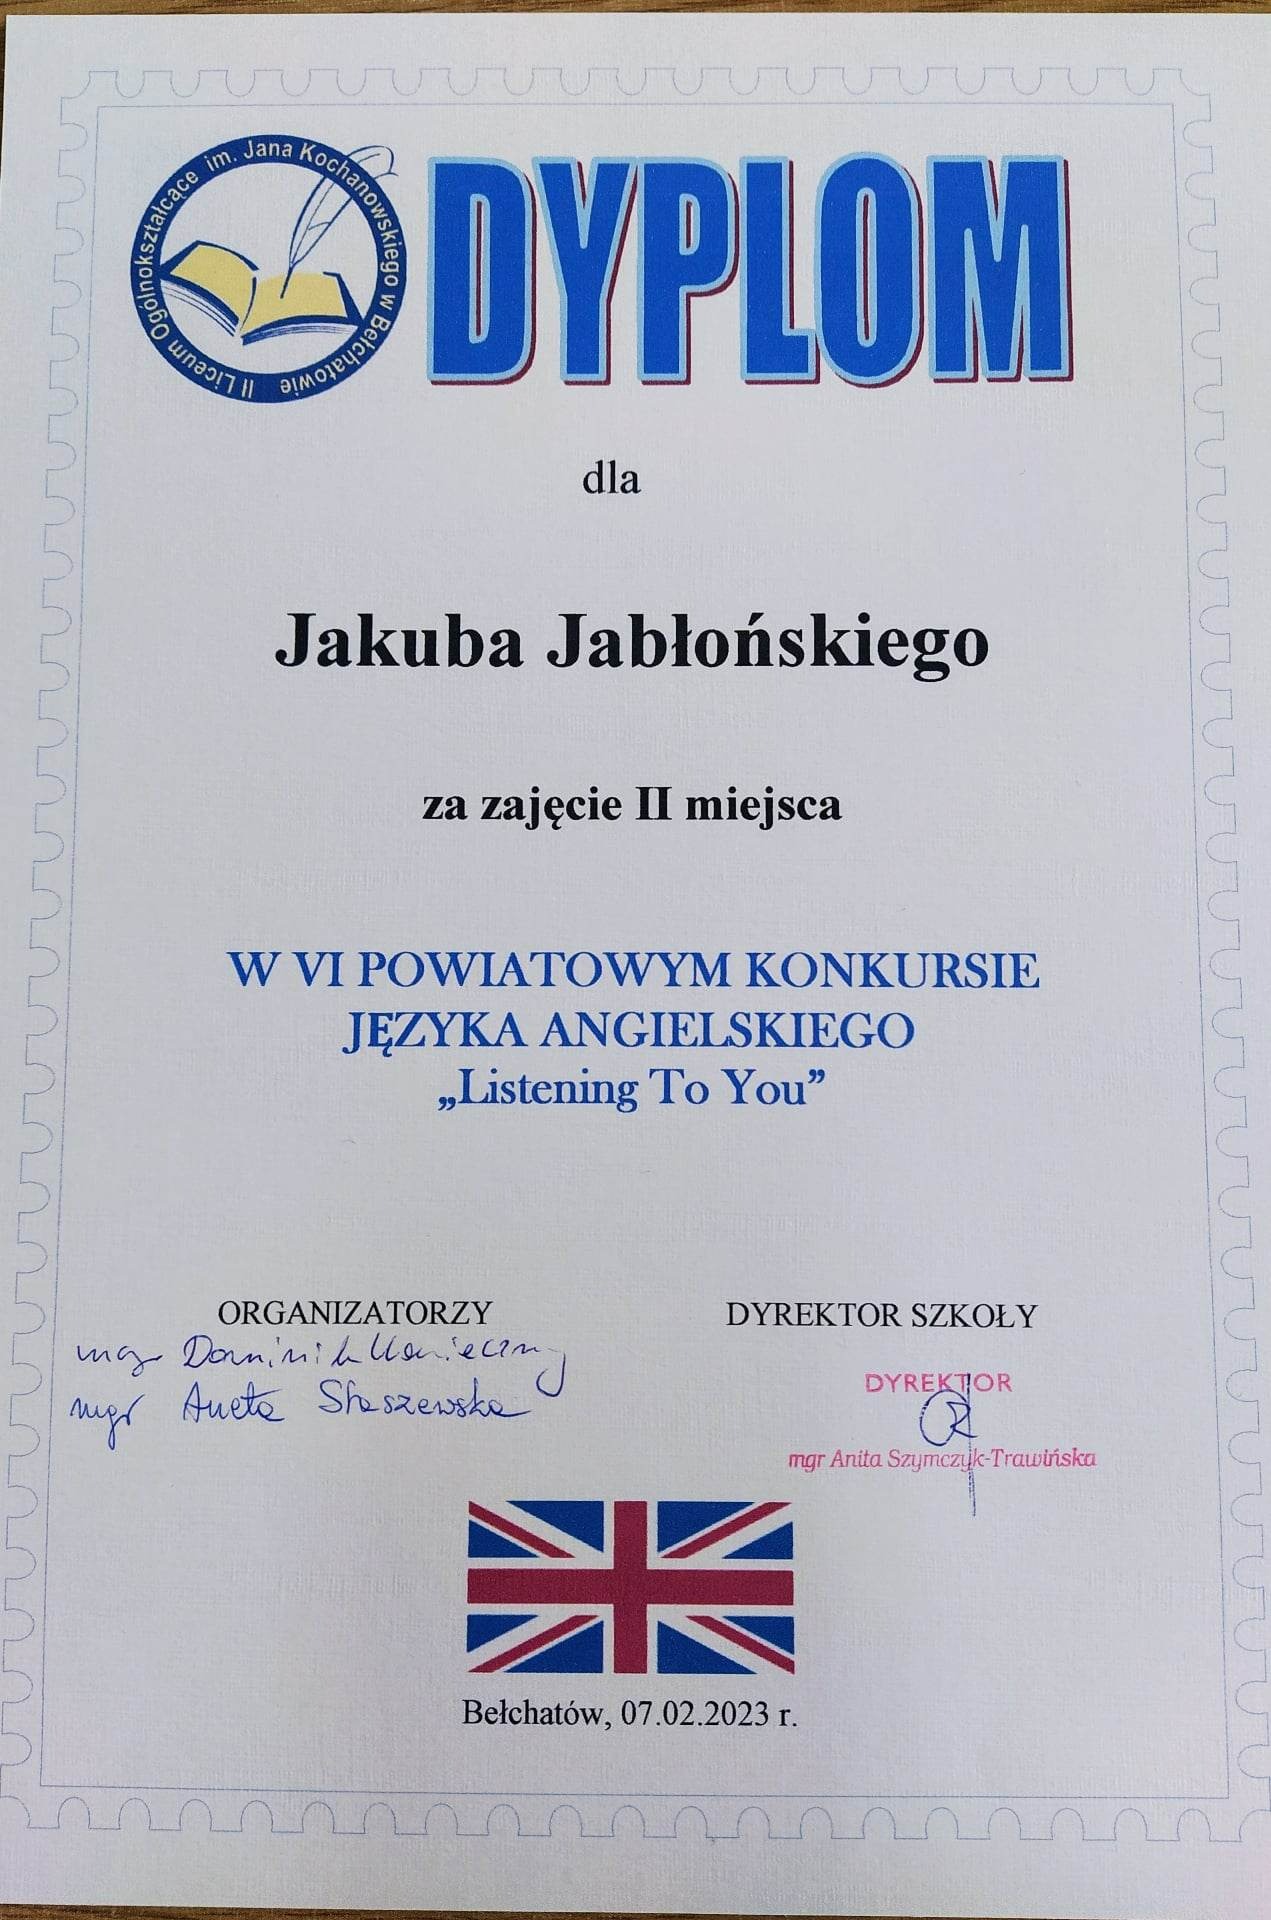 Dyplom dla Jakuba Jabłońskiego za zajęcie II miejsca w konkursie powiatowym "Listening to You"